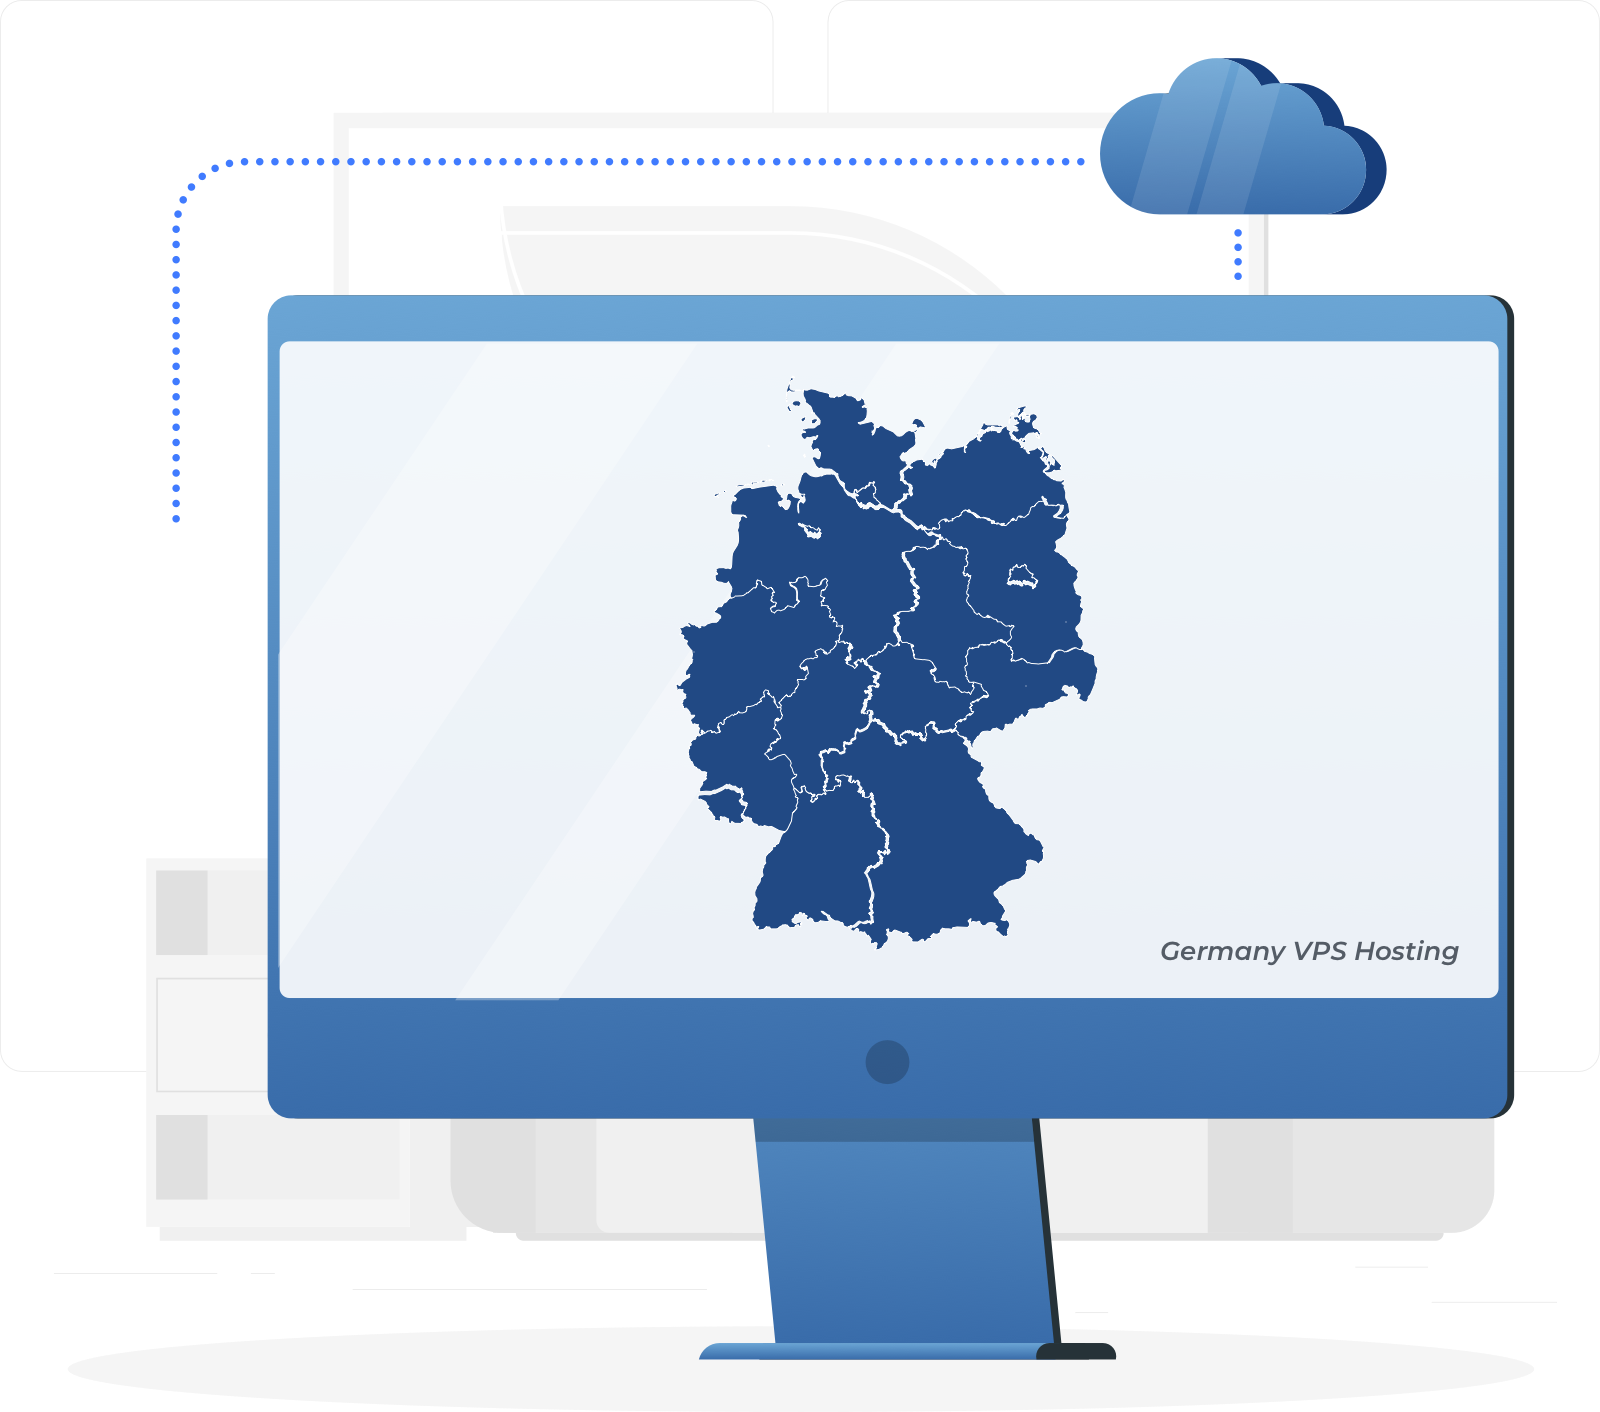 德国 VPS，和高利用率的云服务